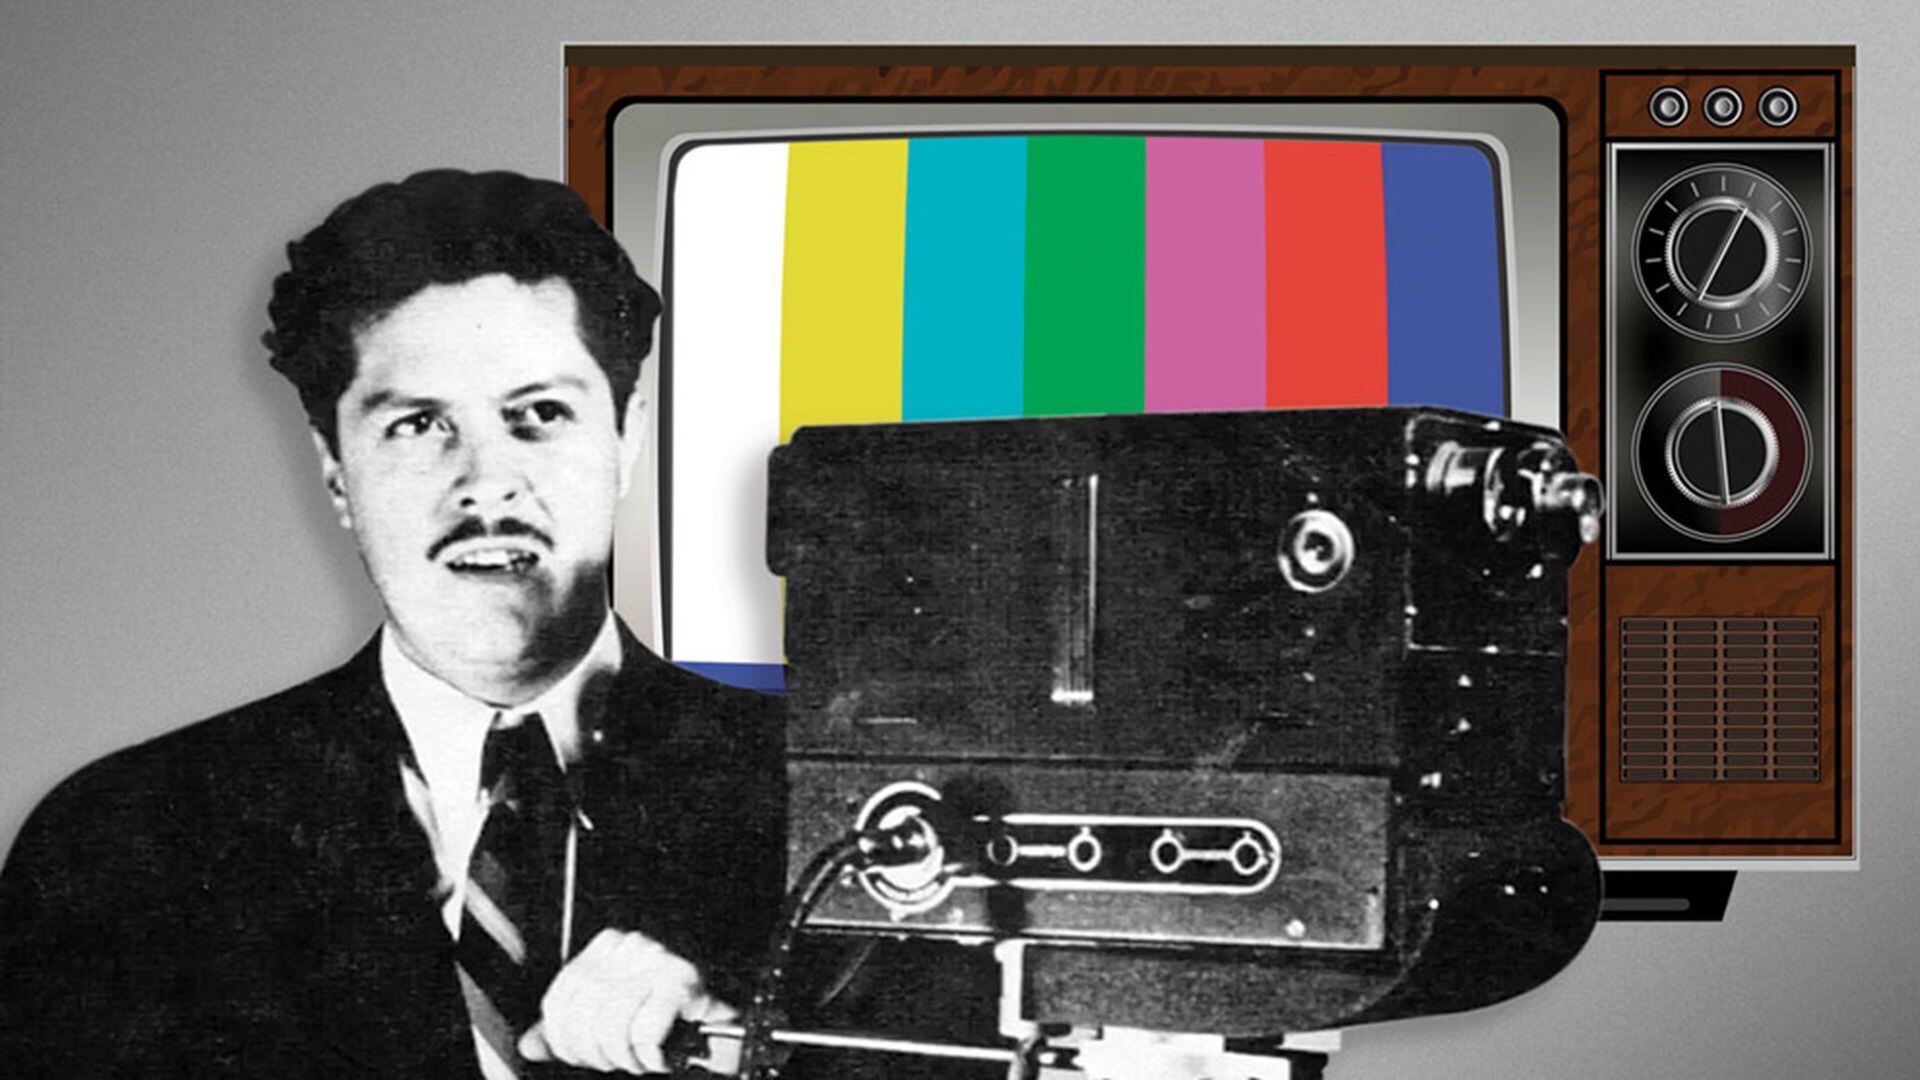 El Canal 5 tuvo su primera transmisión un 21 de enero de 1963, gracias al ingeniero mexicano Guillermo González Camarena.